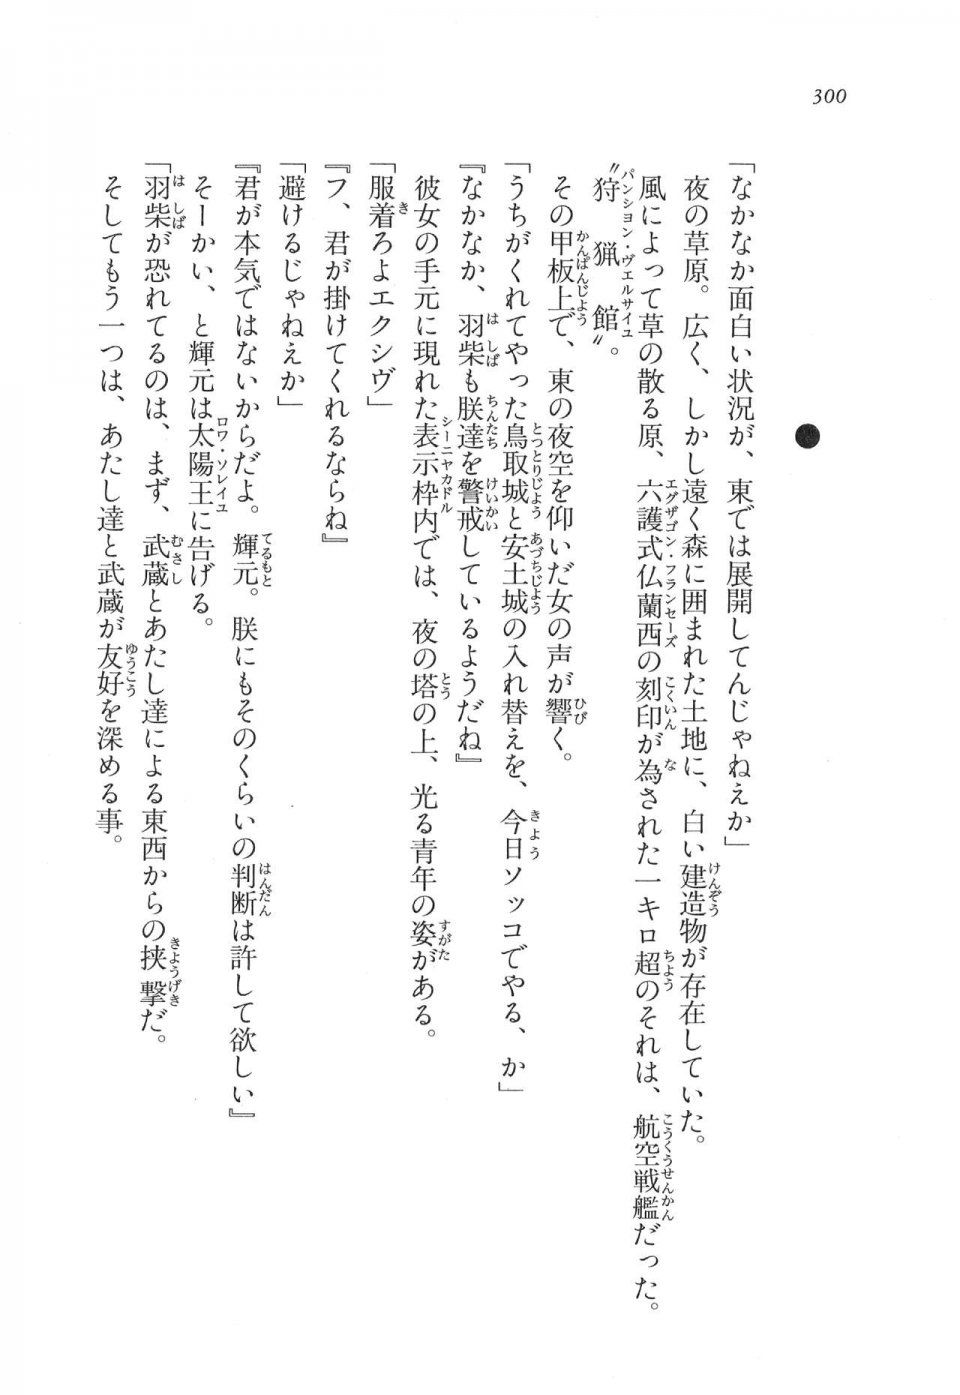 Kyoukai Senjou no Horizon LN Vol 11(5A) - Photo #300